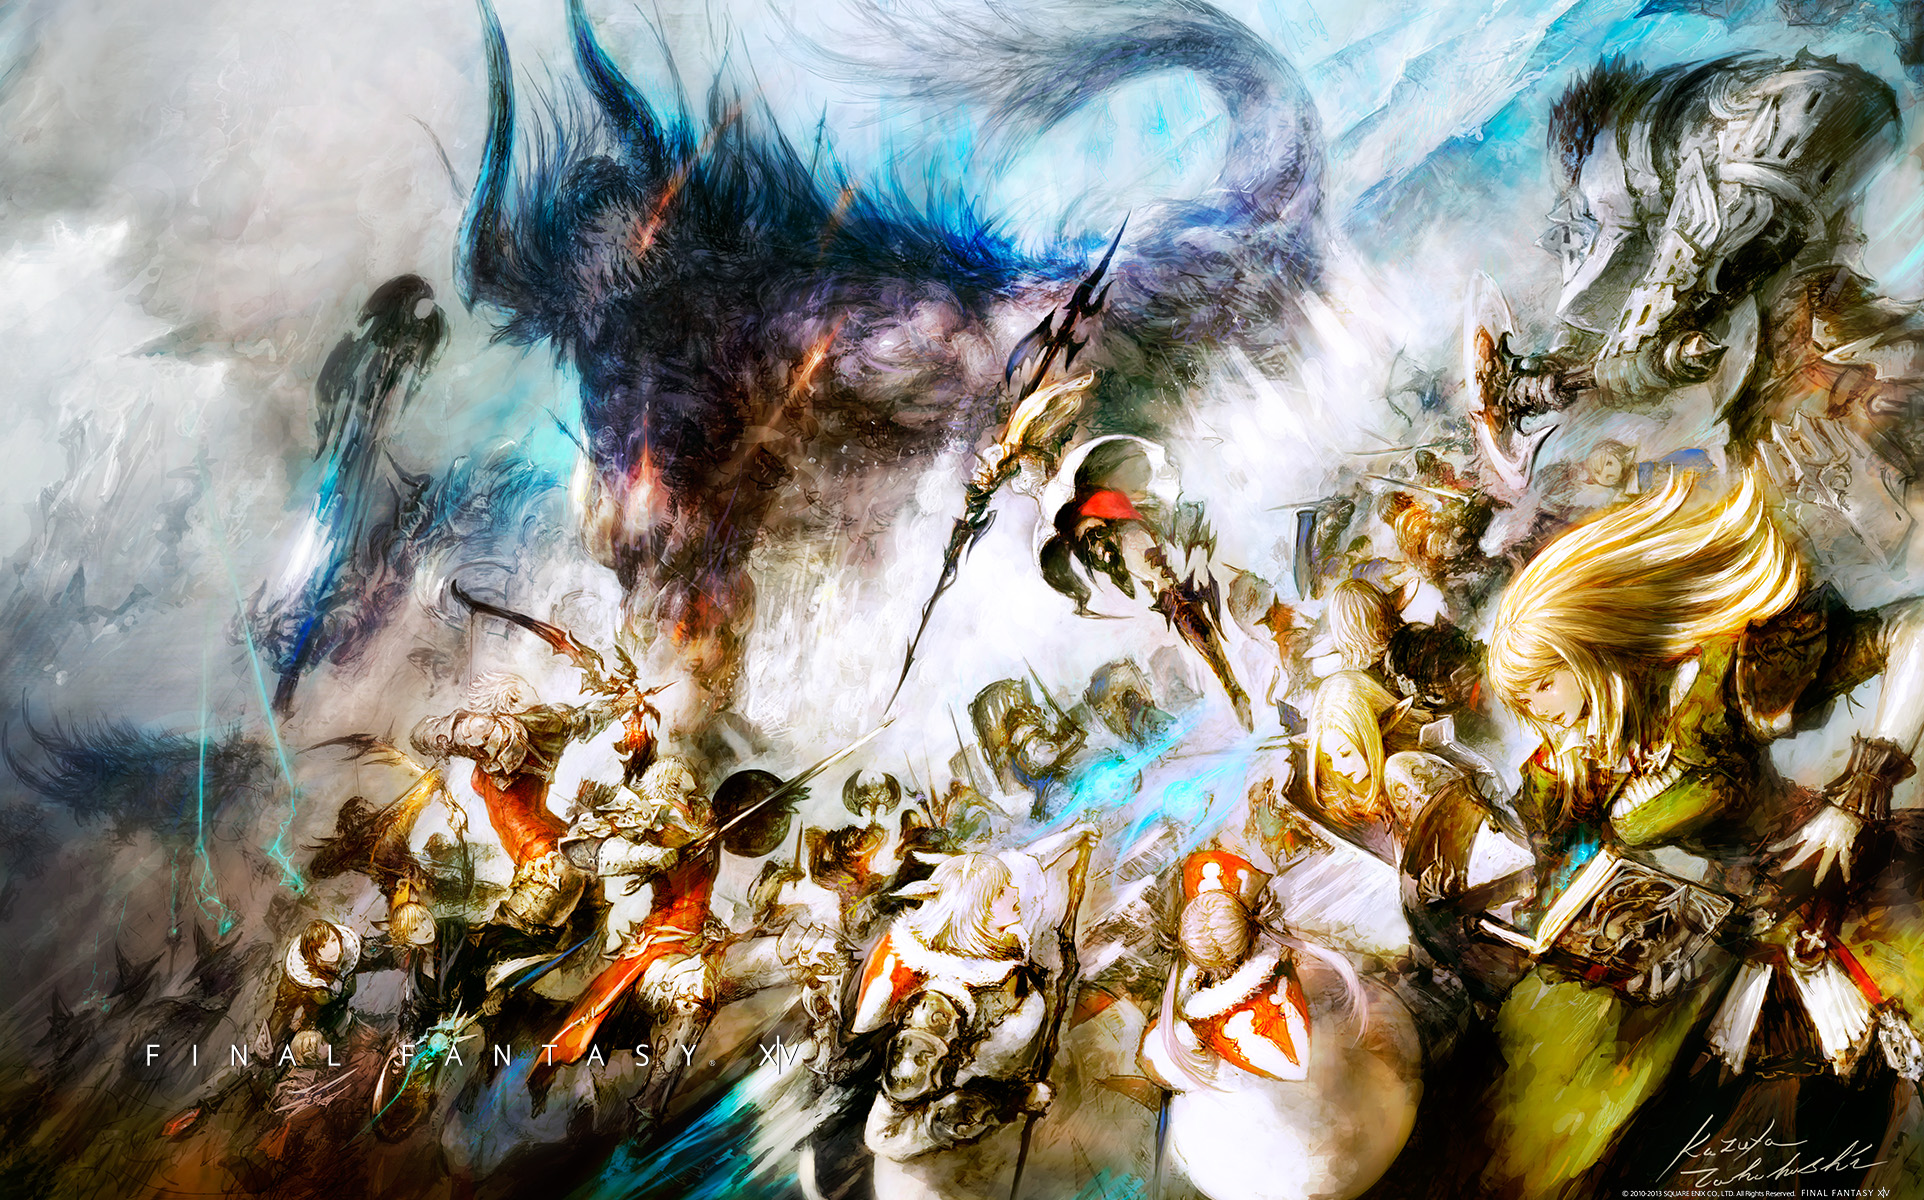 50 Final Fantasy Wallpaper 1080p On Wallpapersafari